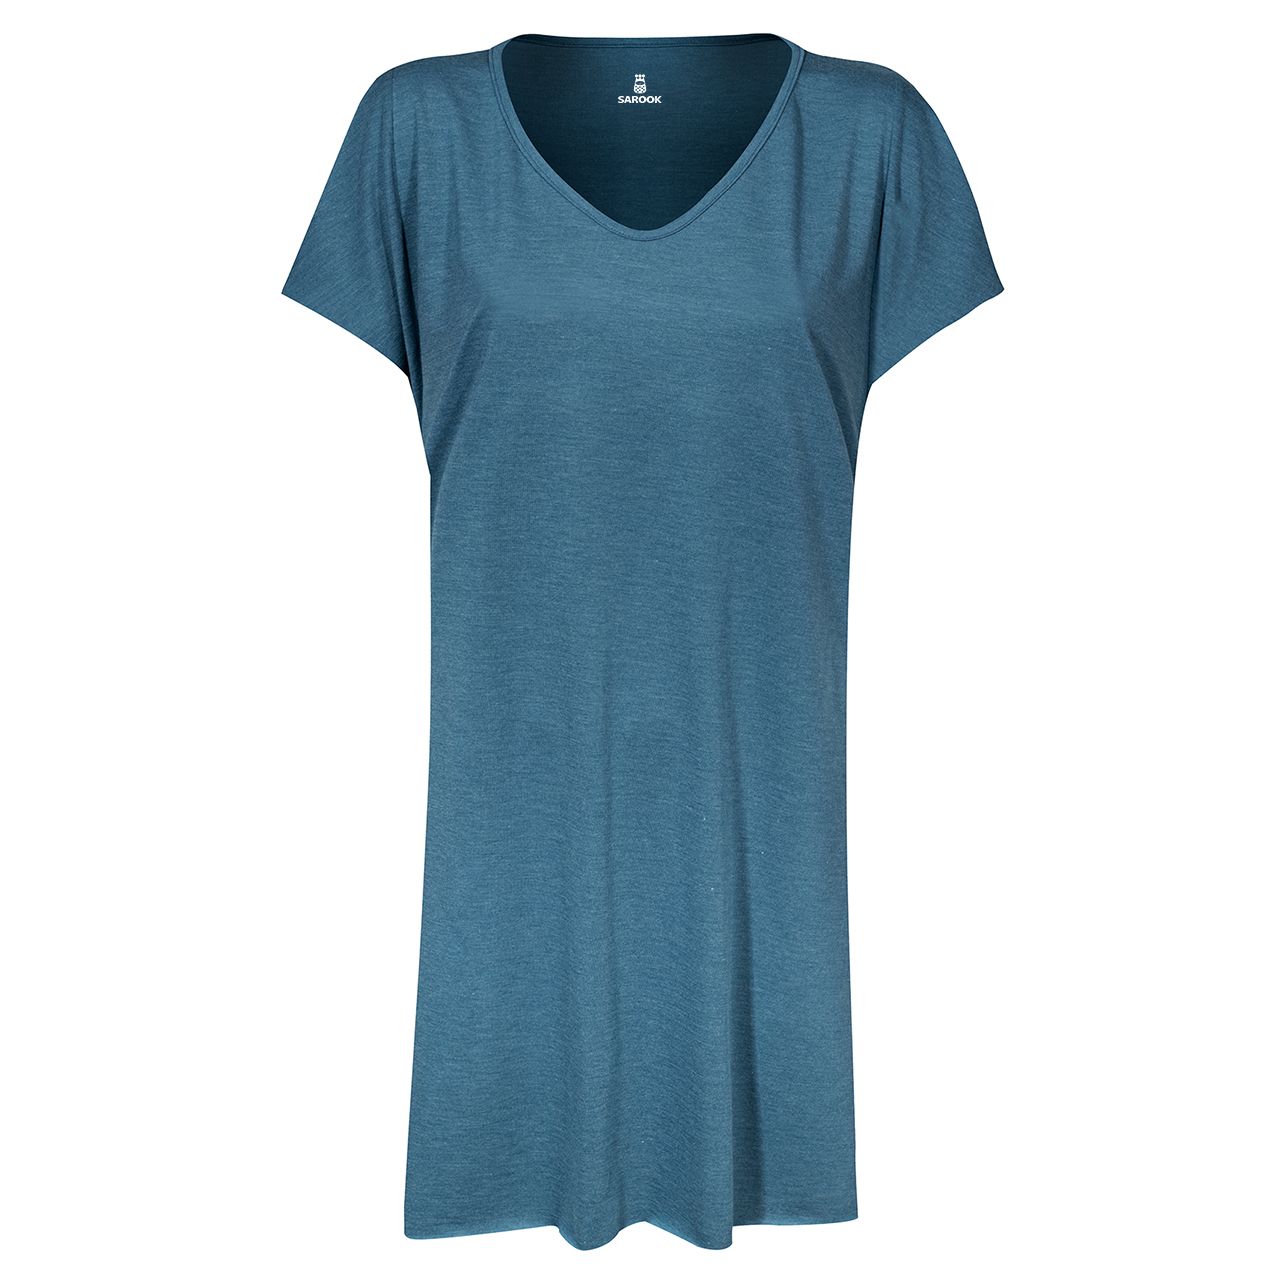 پیراهن زنانه ساروک مدل PRZMELANZH کد 05 رنگ آبی تیره -  - 1